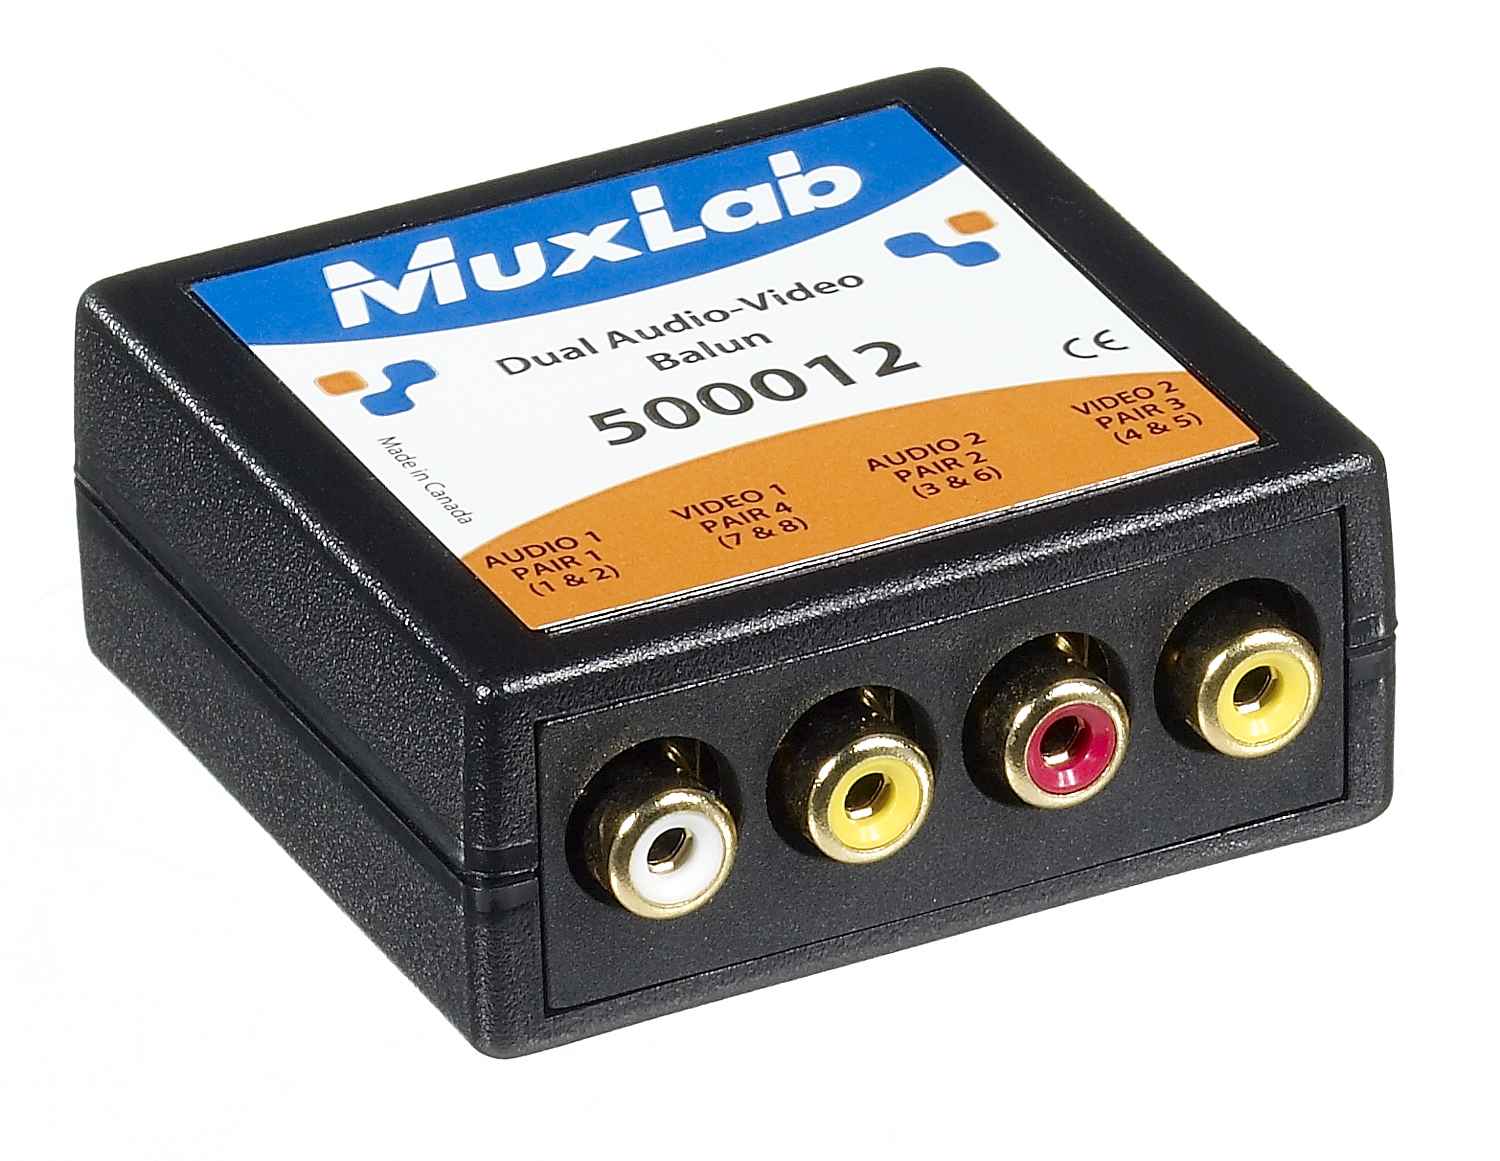 Muxlab 500012